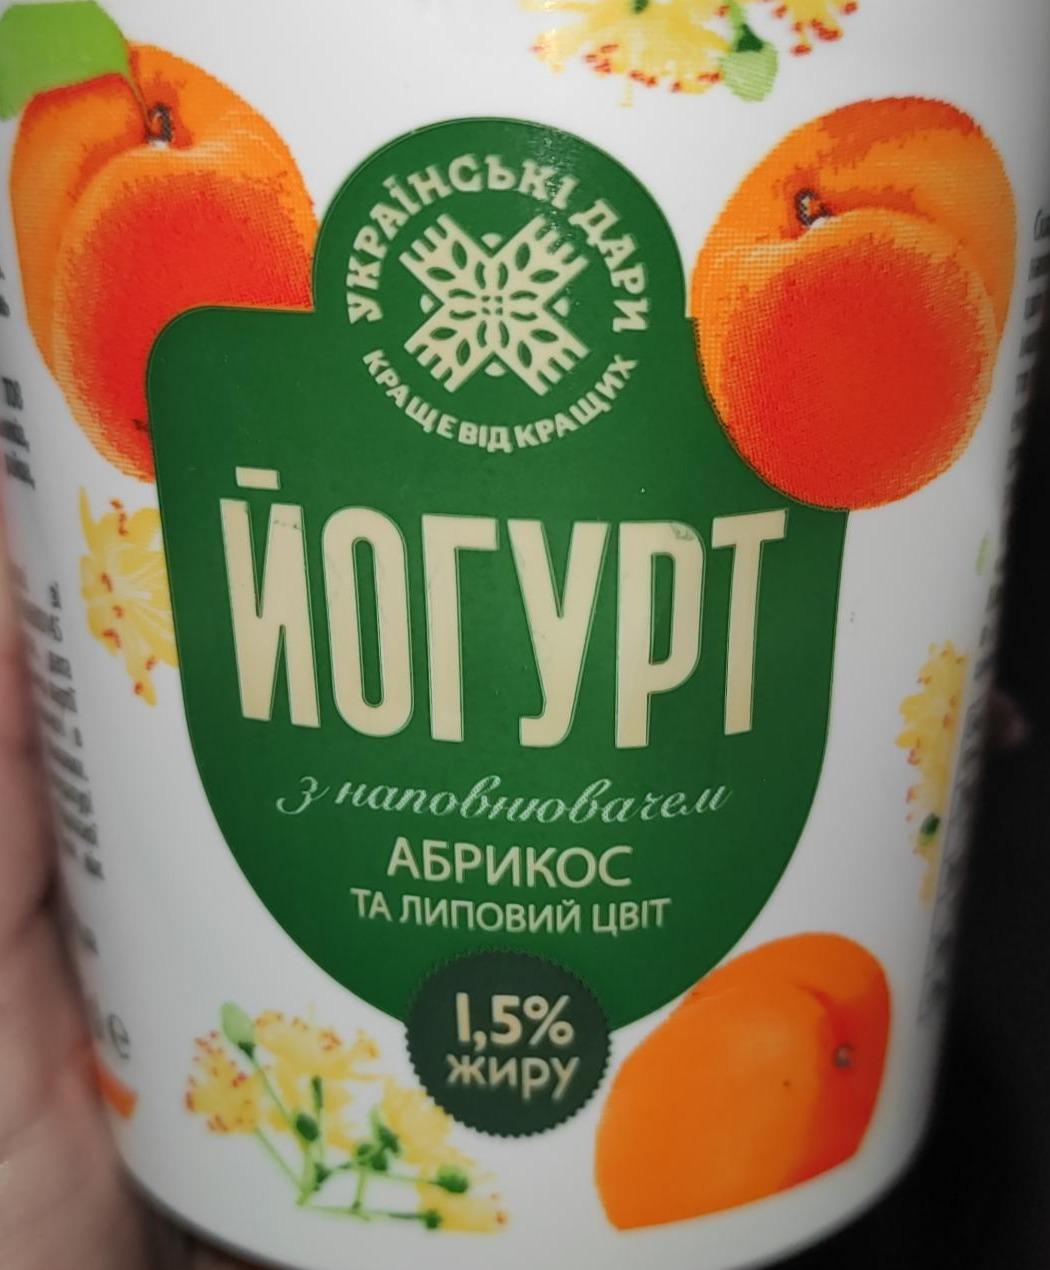 Фото - Йогурт 1.5% з наповнювачем абрикос та липовий цвіт Українські дари